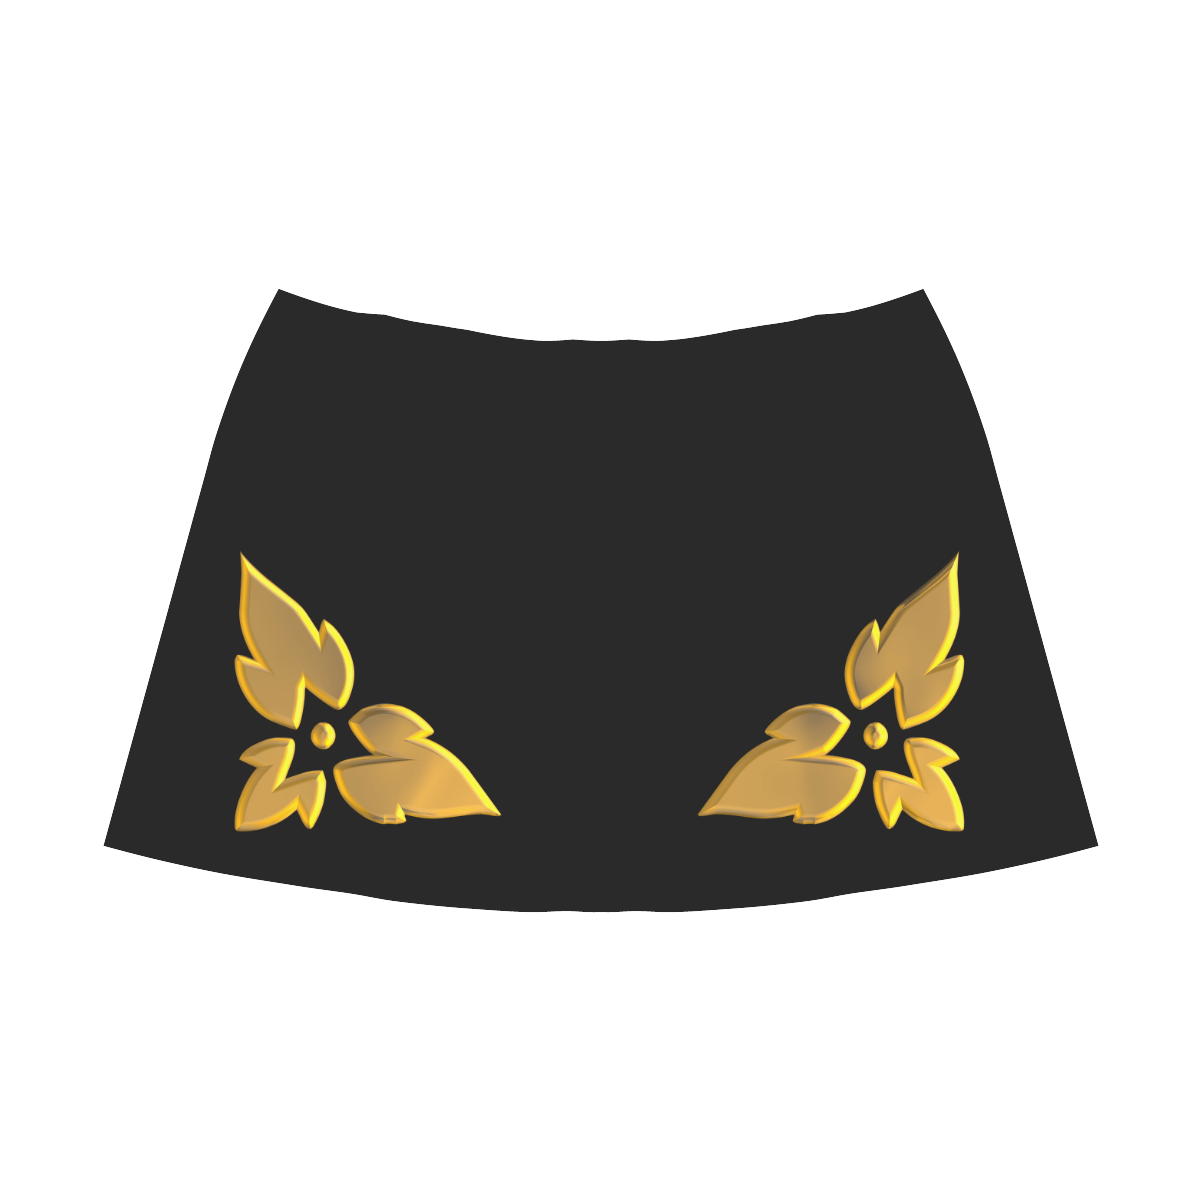 3-D Look Metallic Golden Leaves Border on Black Mnemosyne Women's Crepe Skirt (Model D16)